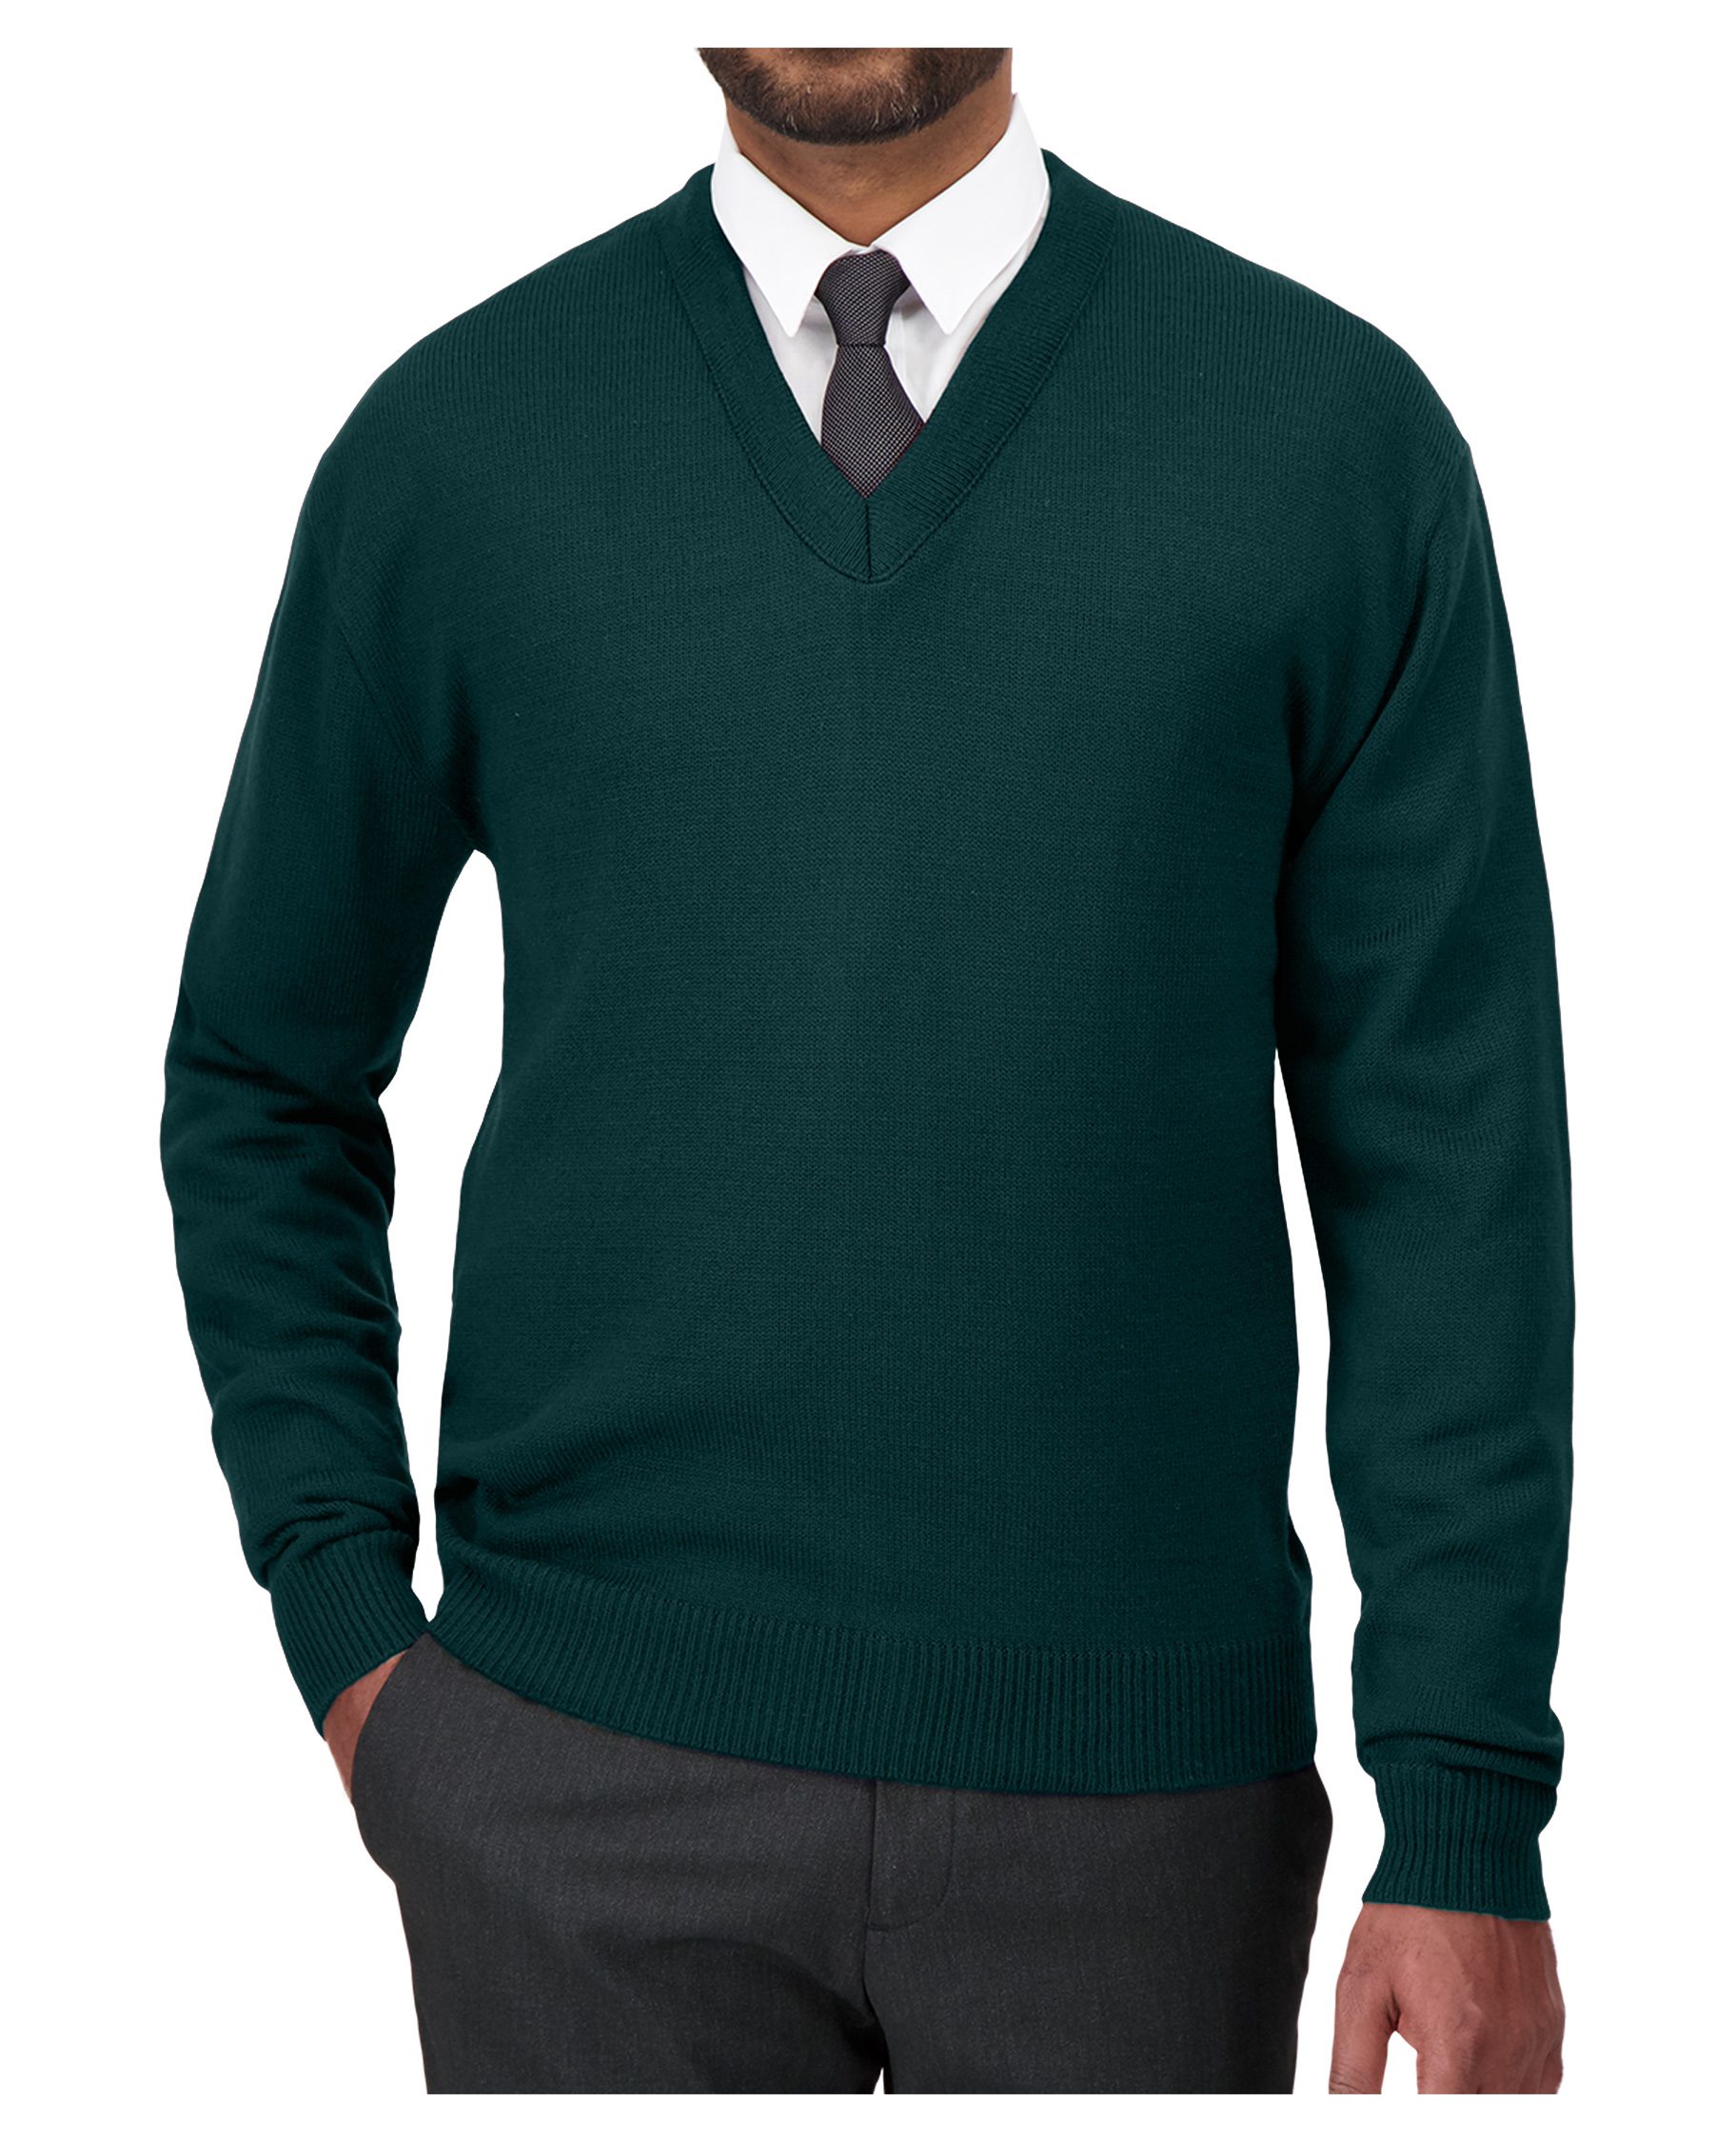 Cobmex V-Neck Long Sleeve Pullover #2010 Hunter Green